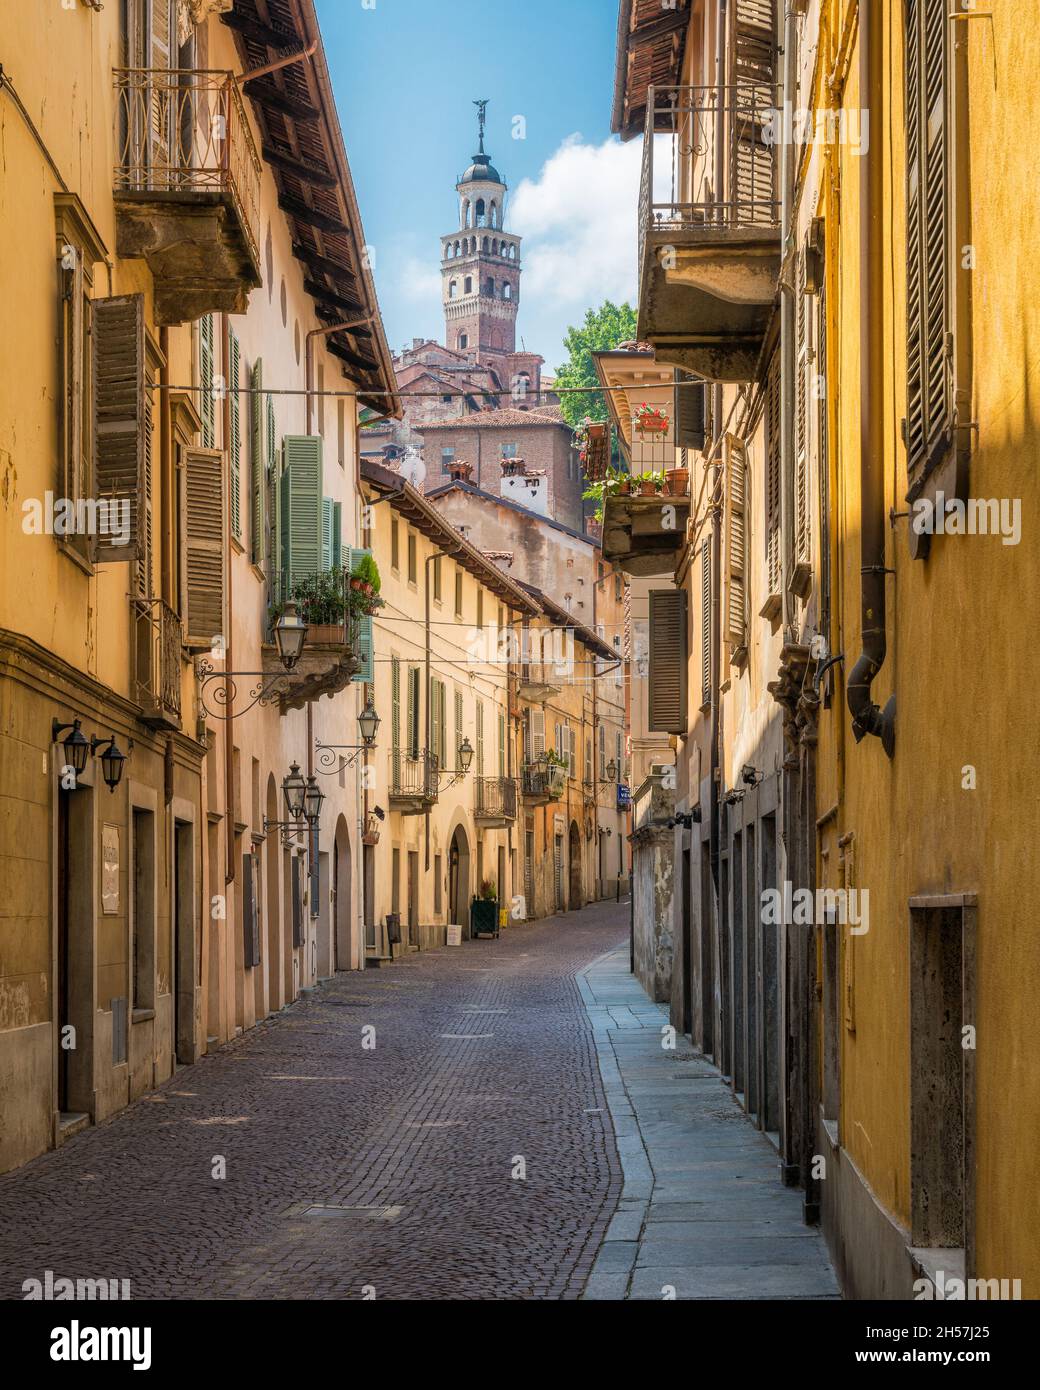 Vista panoramica nella bellissima città di Saluzzo, provincia di Cuneo, Piemonte, Italia. Foto Stock